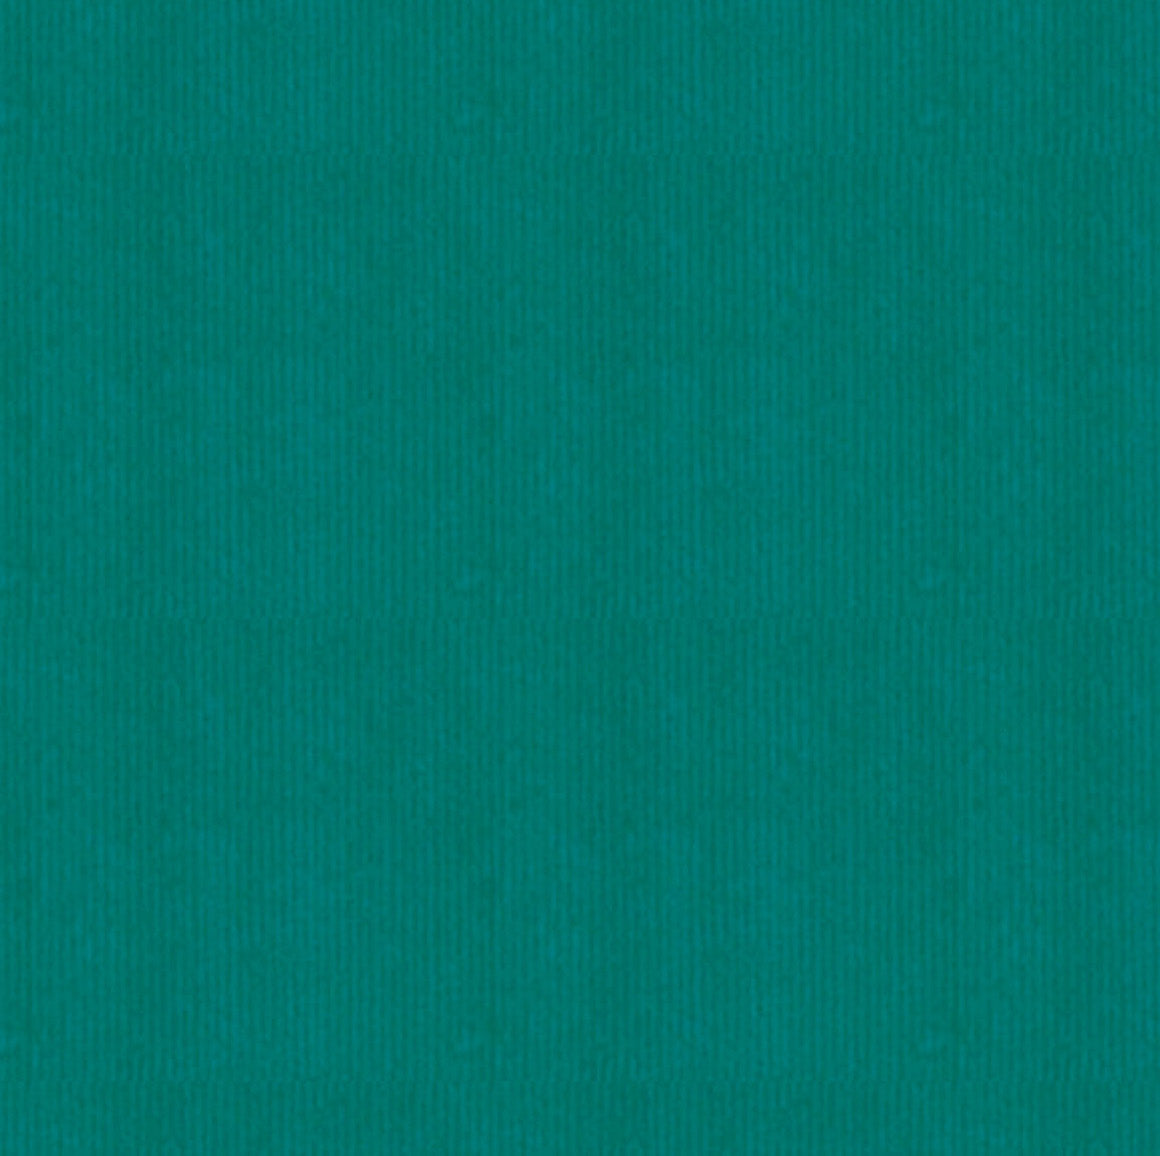 DittaDisplay Rouleau papier couleur jaune moutarde sur kraft brun vergé blue-green color paper roll on brown kraft laid paper blau-grün Papierrolle auf braunem Kraft-Büttenpapier